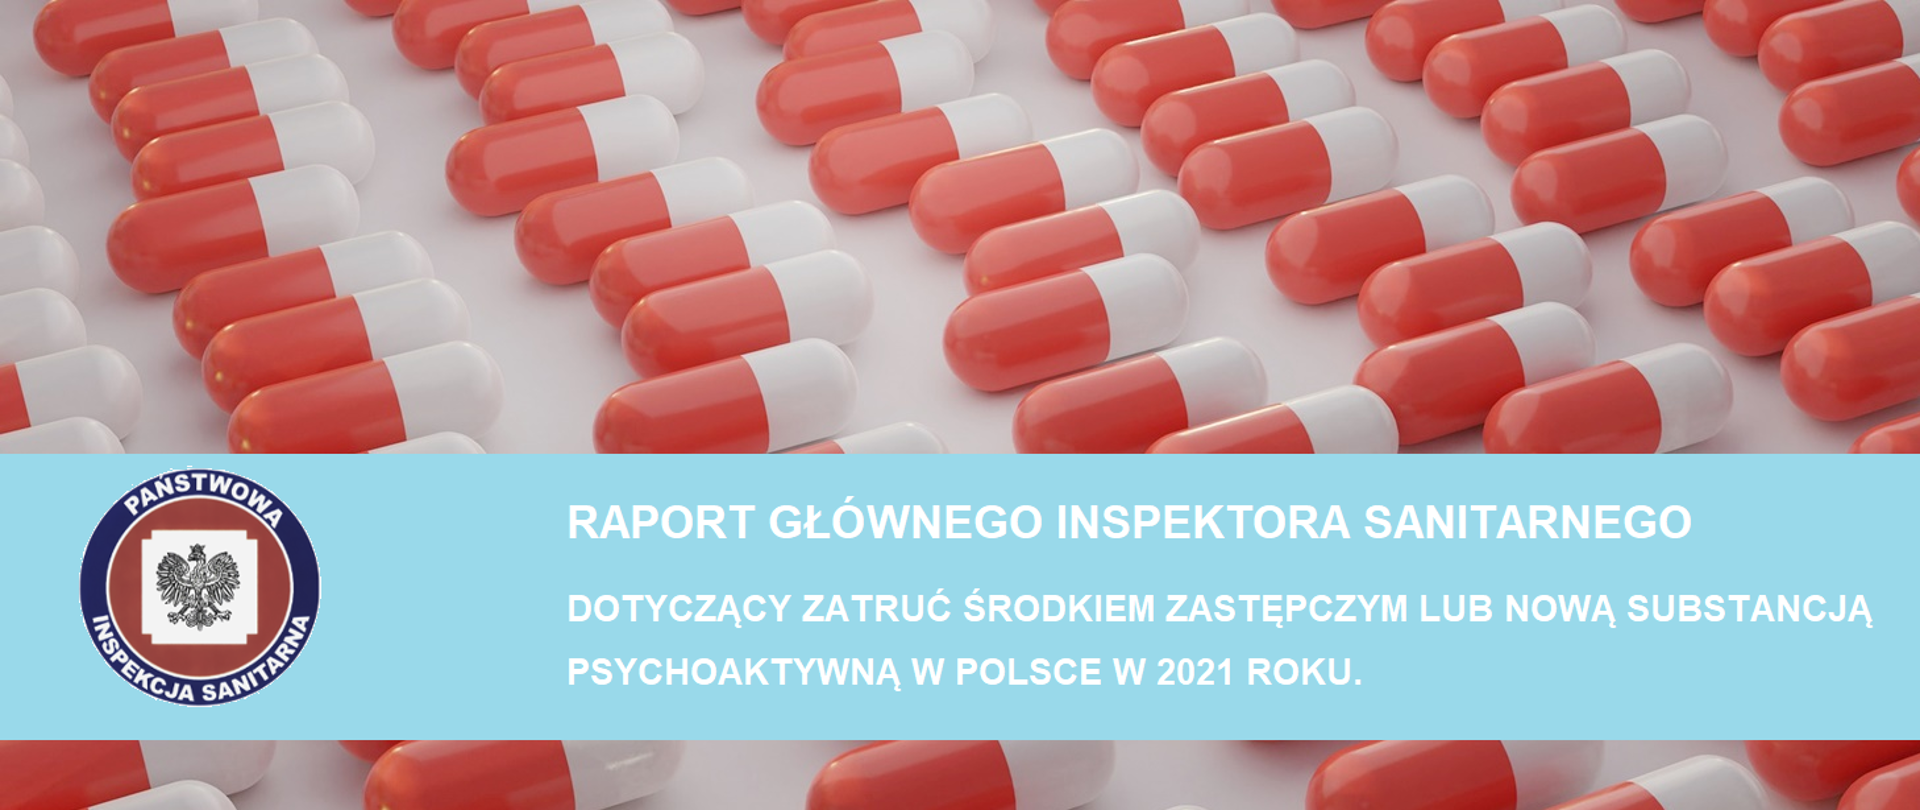 Raport dotyczący zatruć środkiem zastępczym lub nową substancją psychoaktywną w Polsce w 2021 roku.